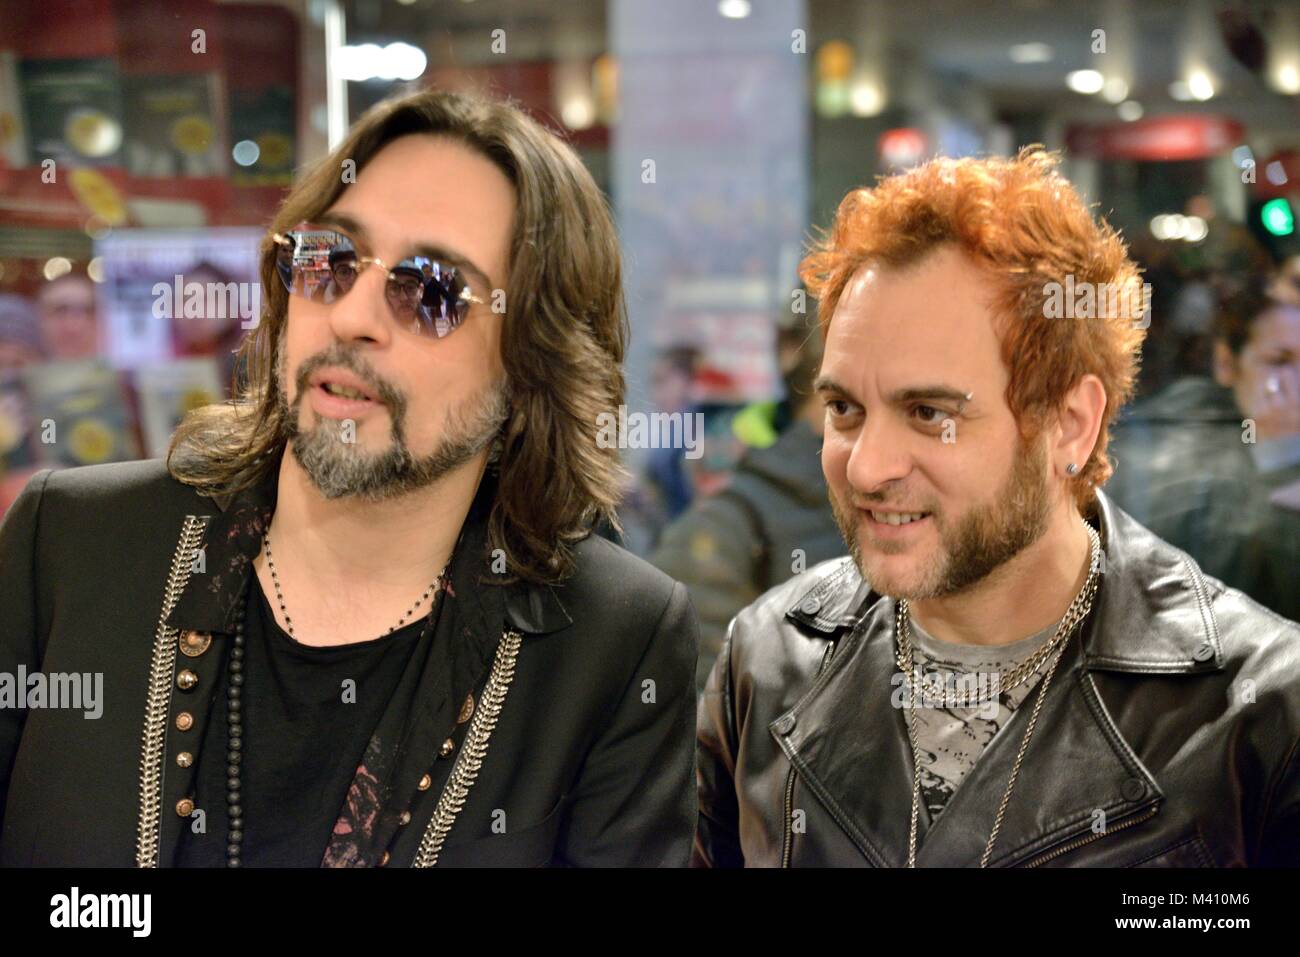 Le vibrazioni Francesco Sarcìna) rock band italiana a Milano Foto Stock